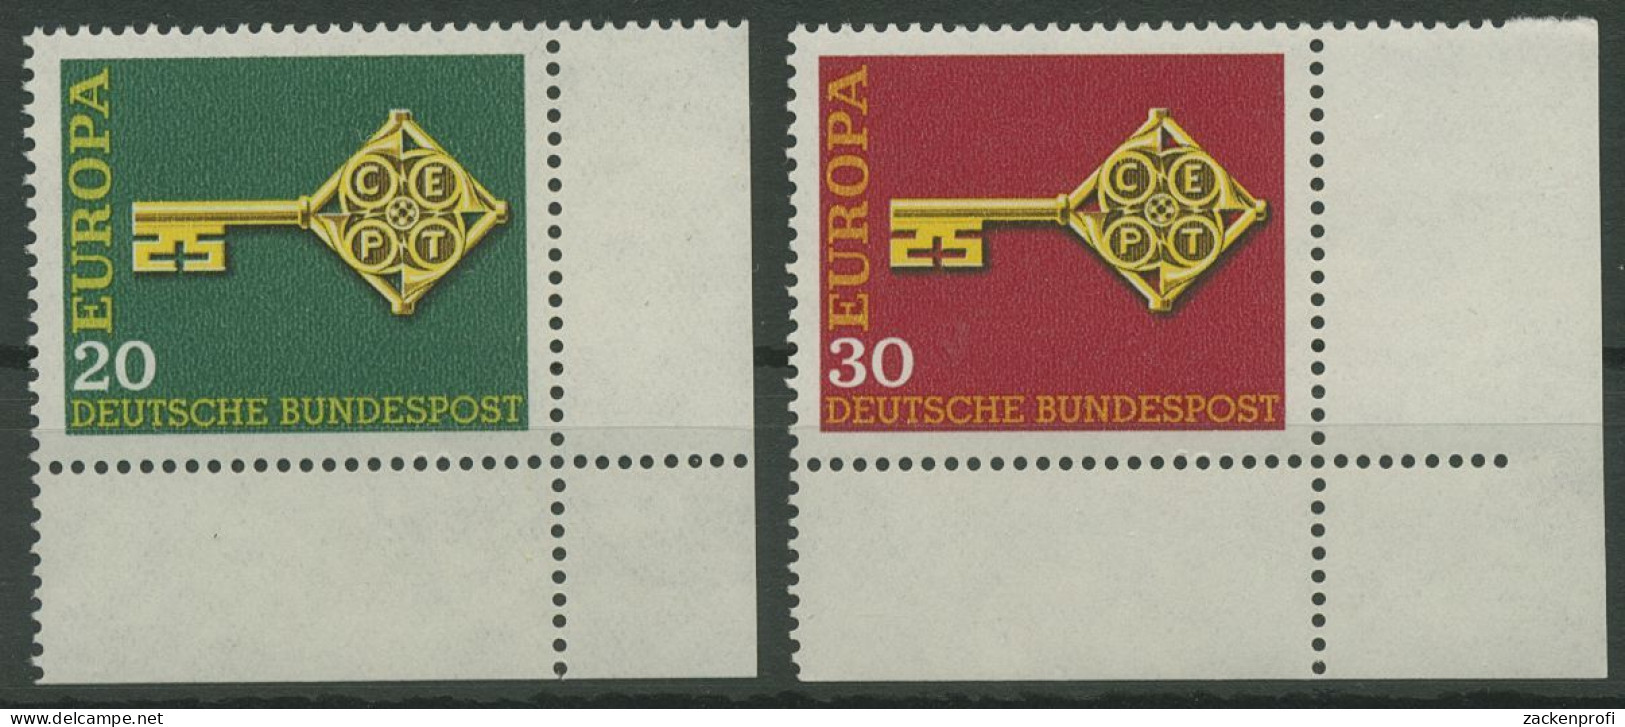 Bund 1968 Europa CEPT 559/60 Ecke 4 Unten Rechts Postfrisch (E843) - Nuovi